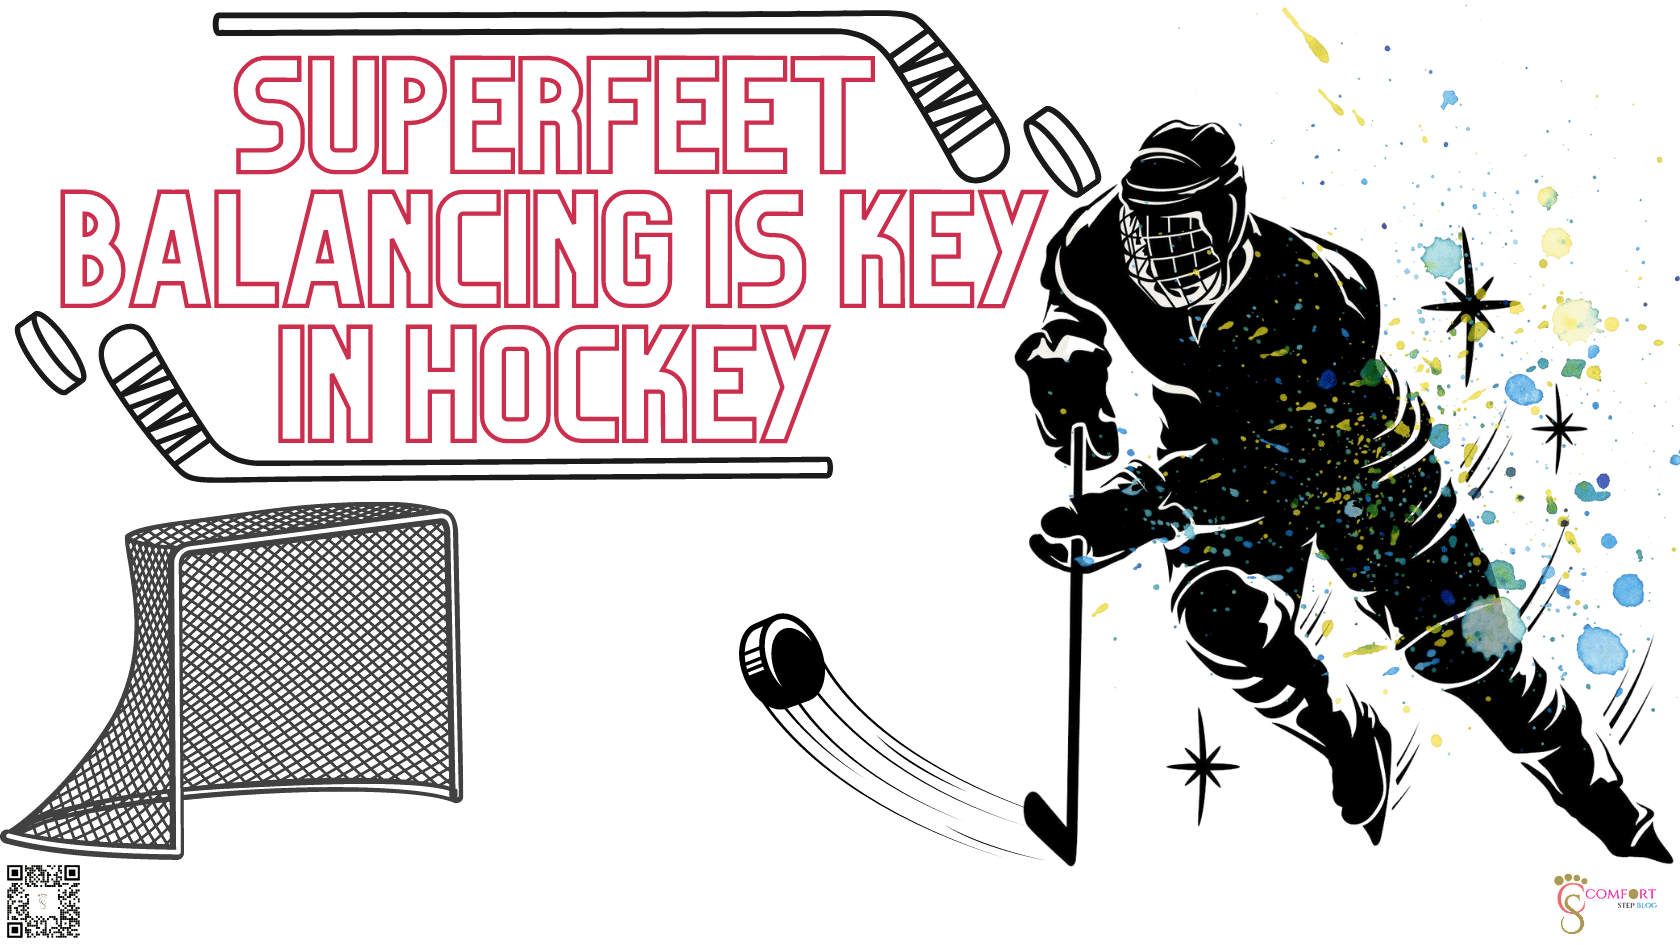 Superfeet balancing is key in Hockey